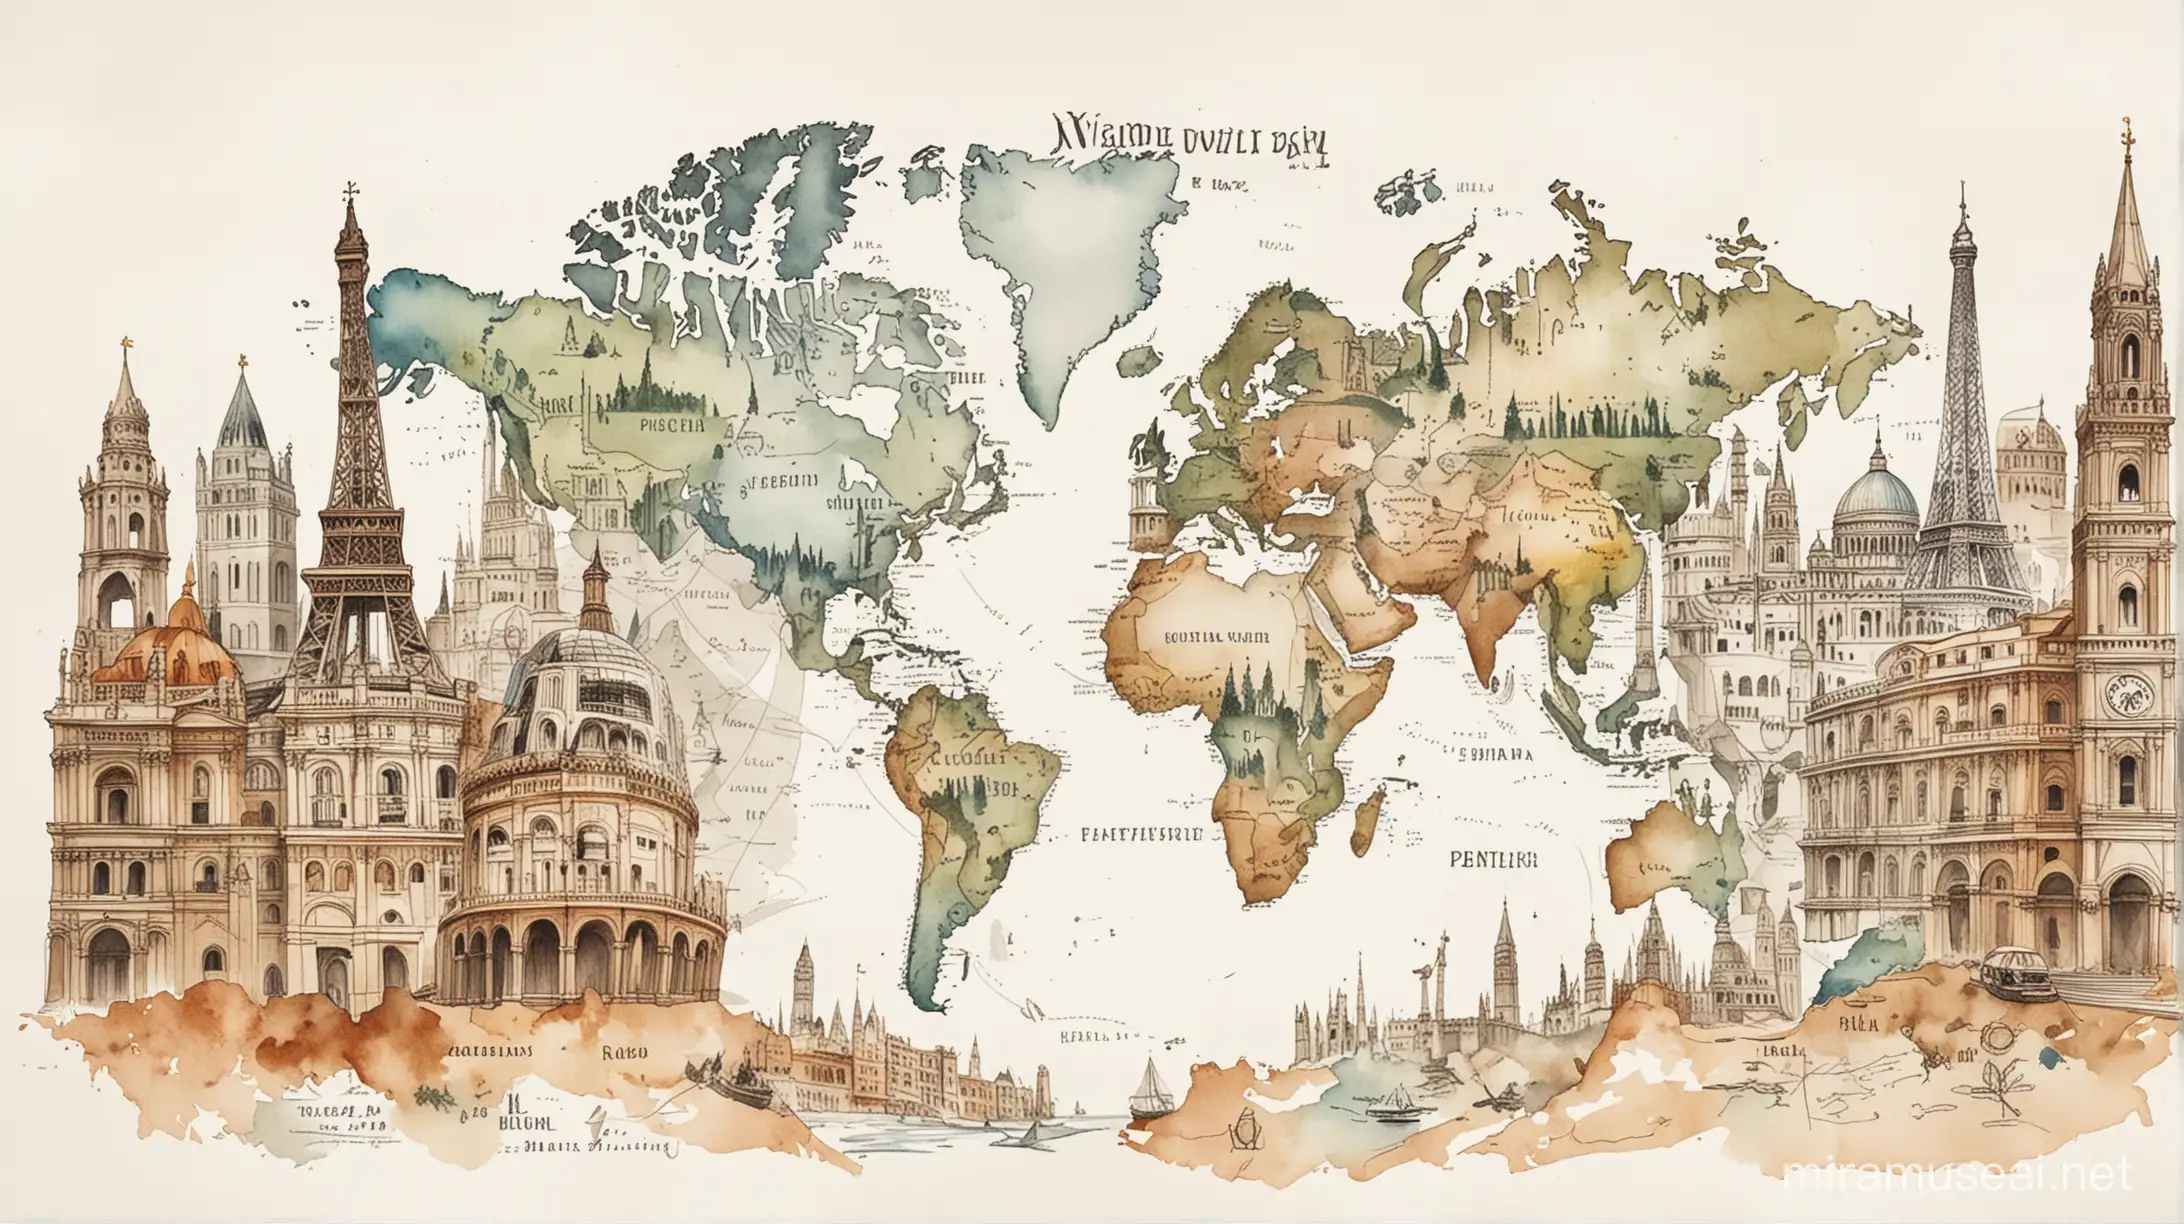 grafika na pierwszym planie znane zabytki i budowle świata. w tle szybki niedbały szkic przedstawiający mapę świata. białe tło, stonowane barwy, obraz malowany akwarelą